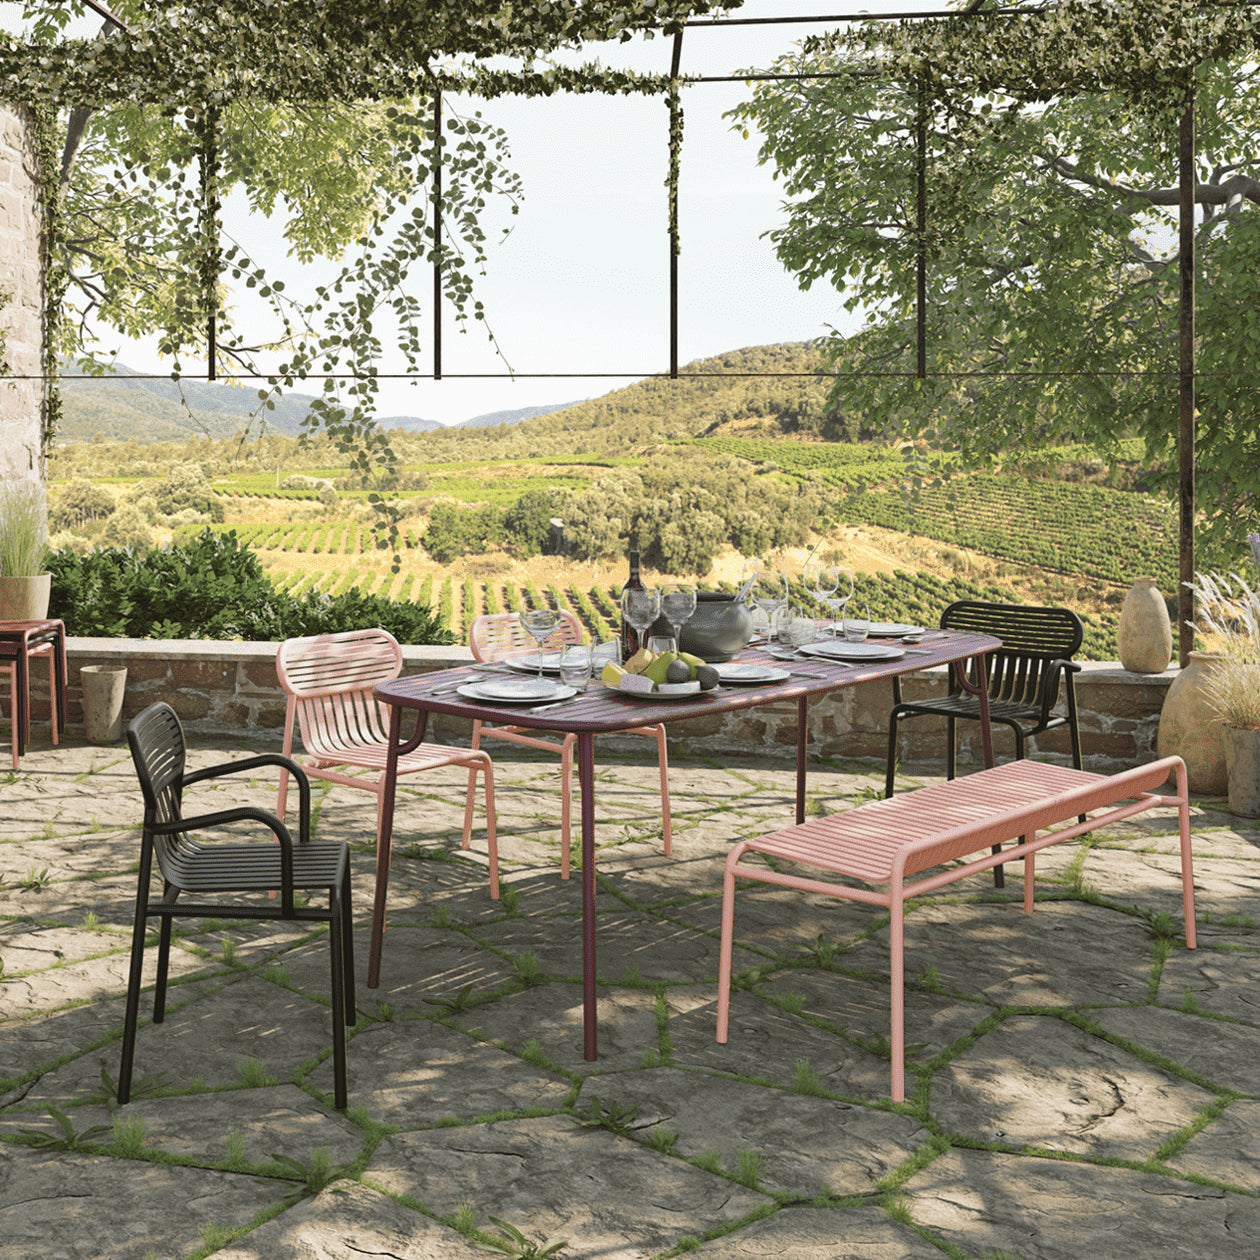 Week-End Gartenstuhl mit Armlehne in Black präsentiert im Onlineshop von KAQTU Design AG. Gartenstuhl mit Armlehnen ist von Petite Friture